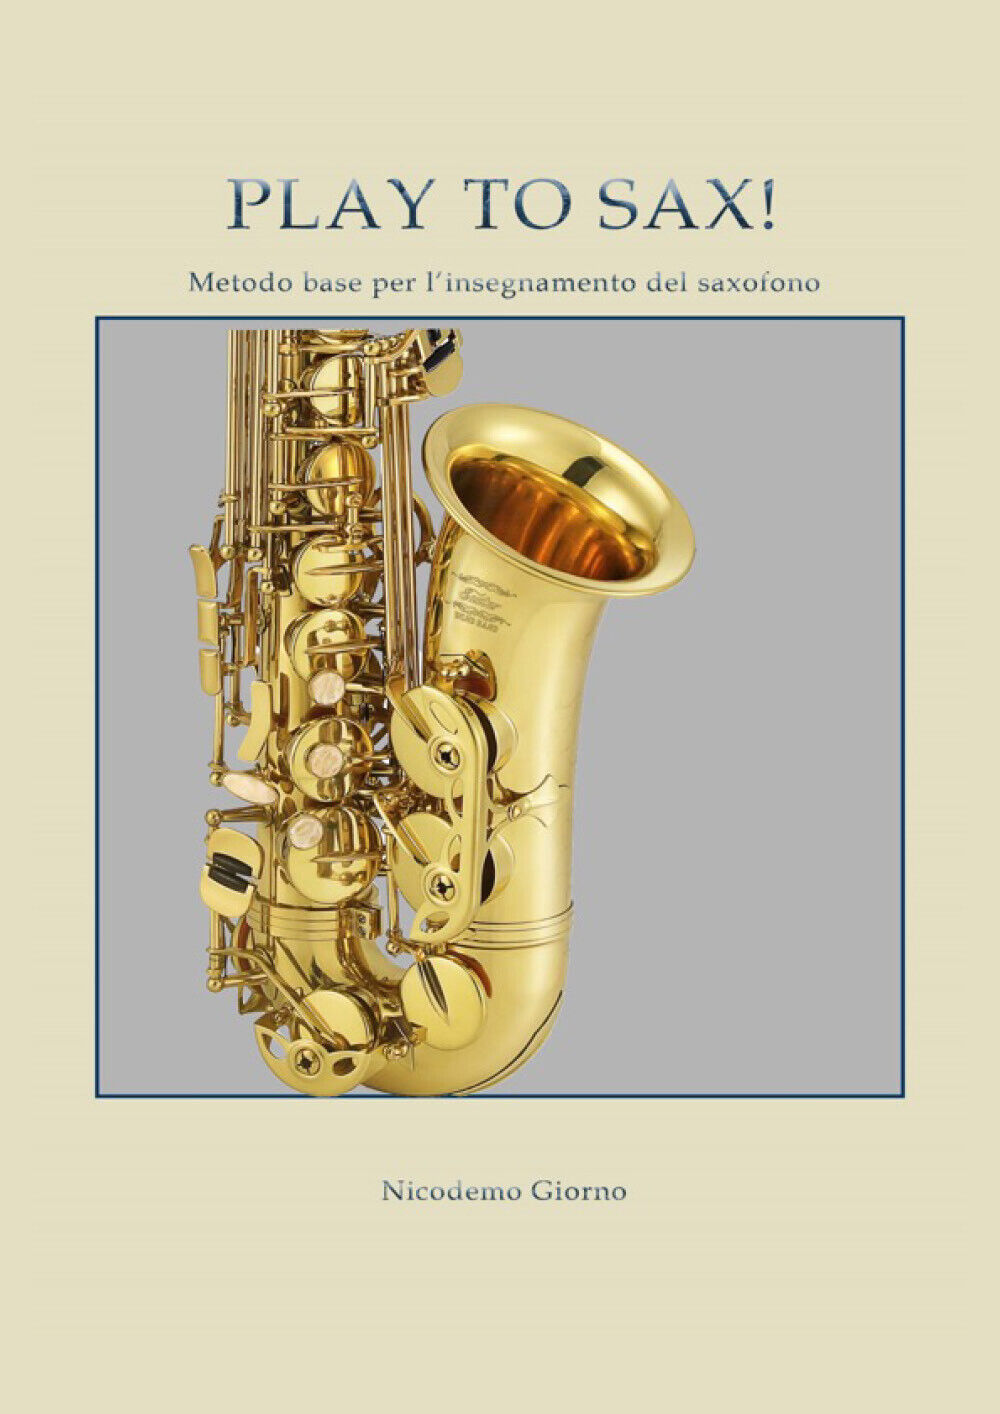 Play to sax. Metodo base per L'insegnamento del saxofono di Nicodemo Giorno,  20